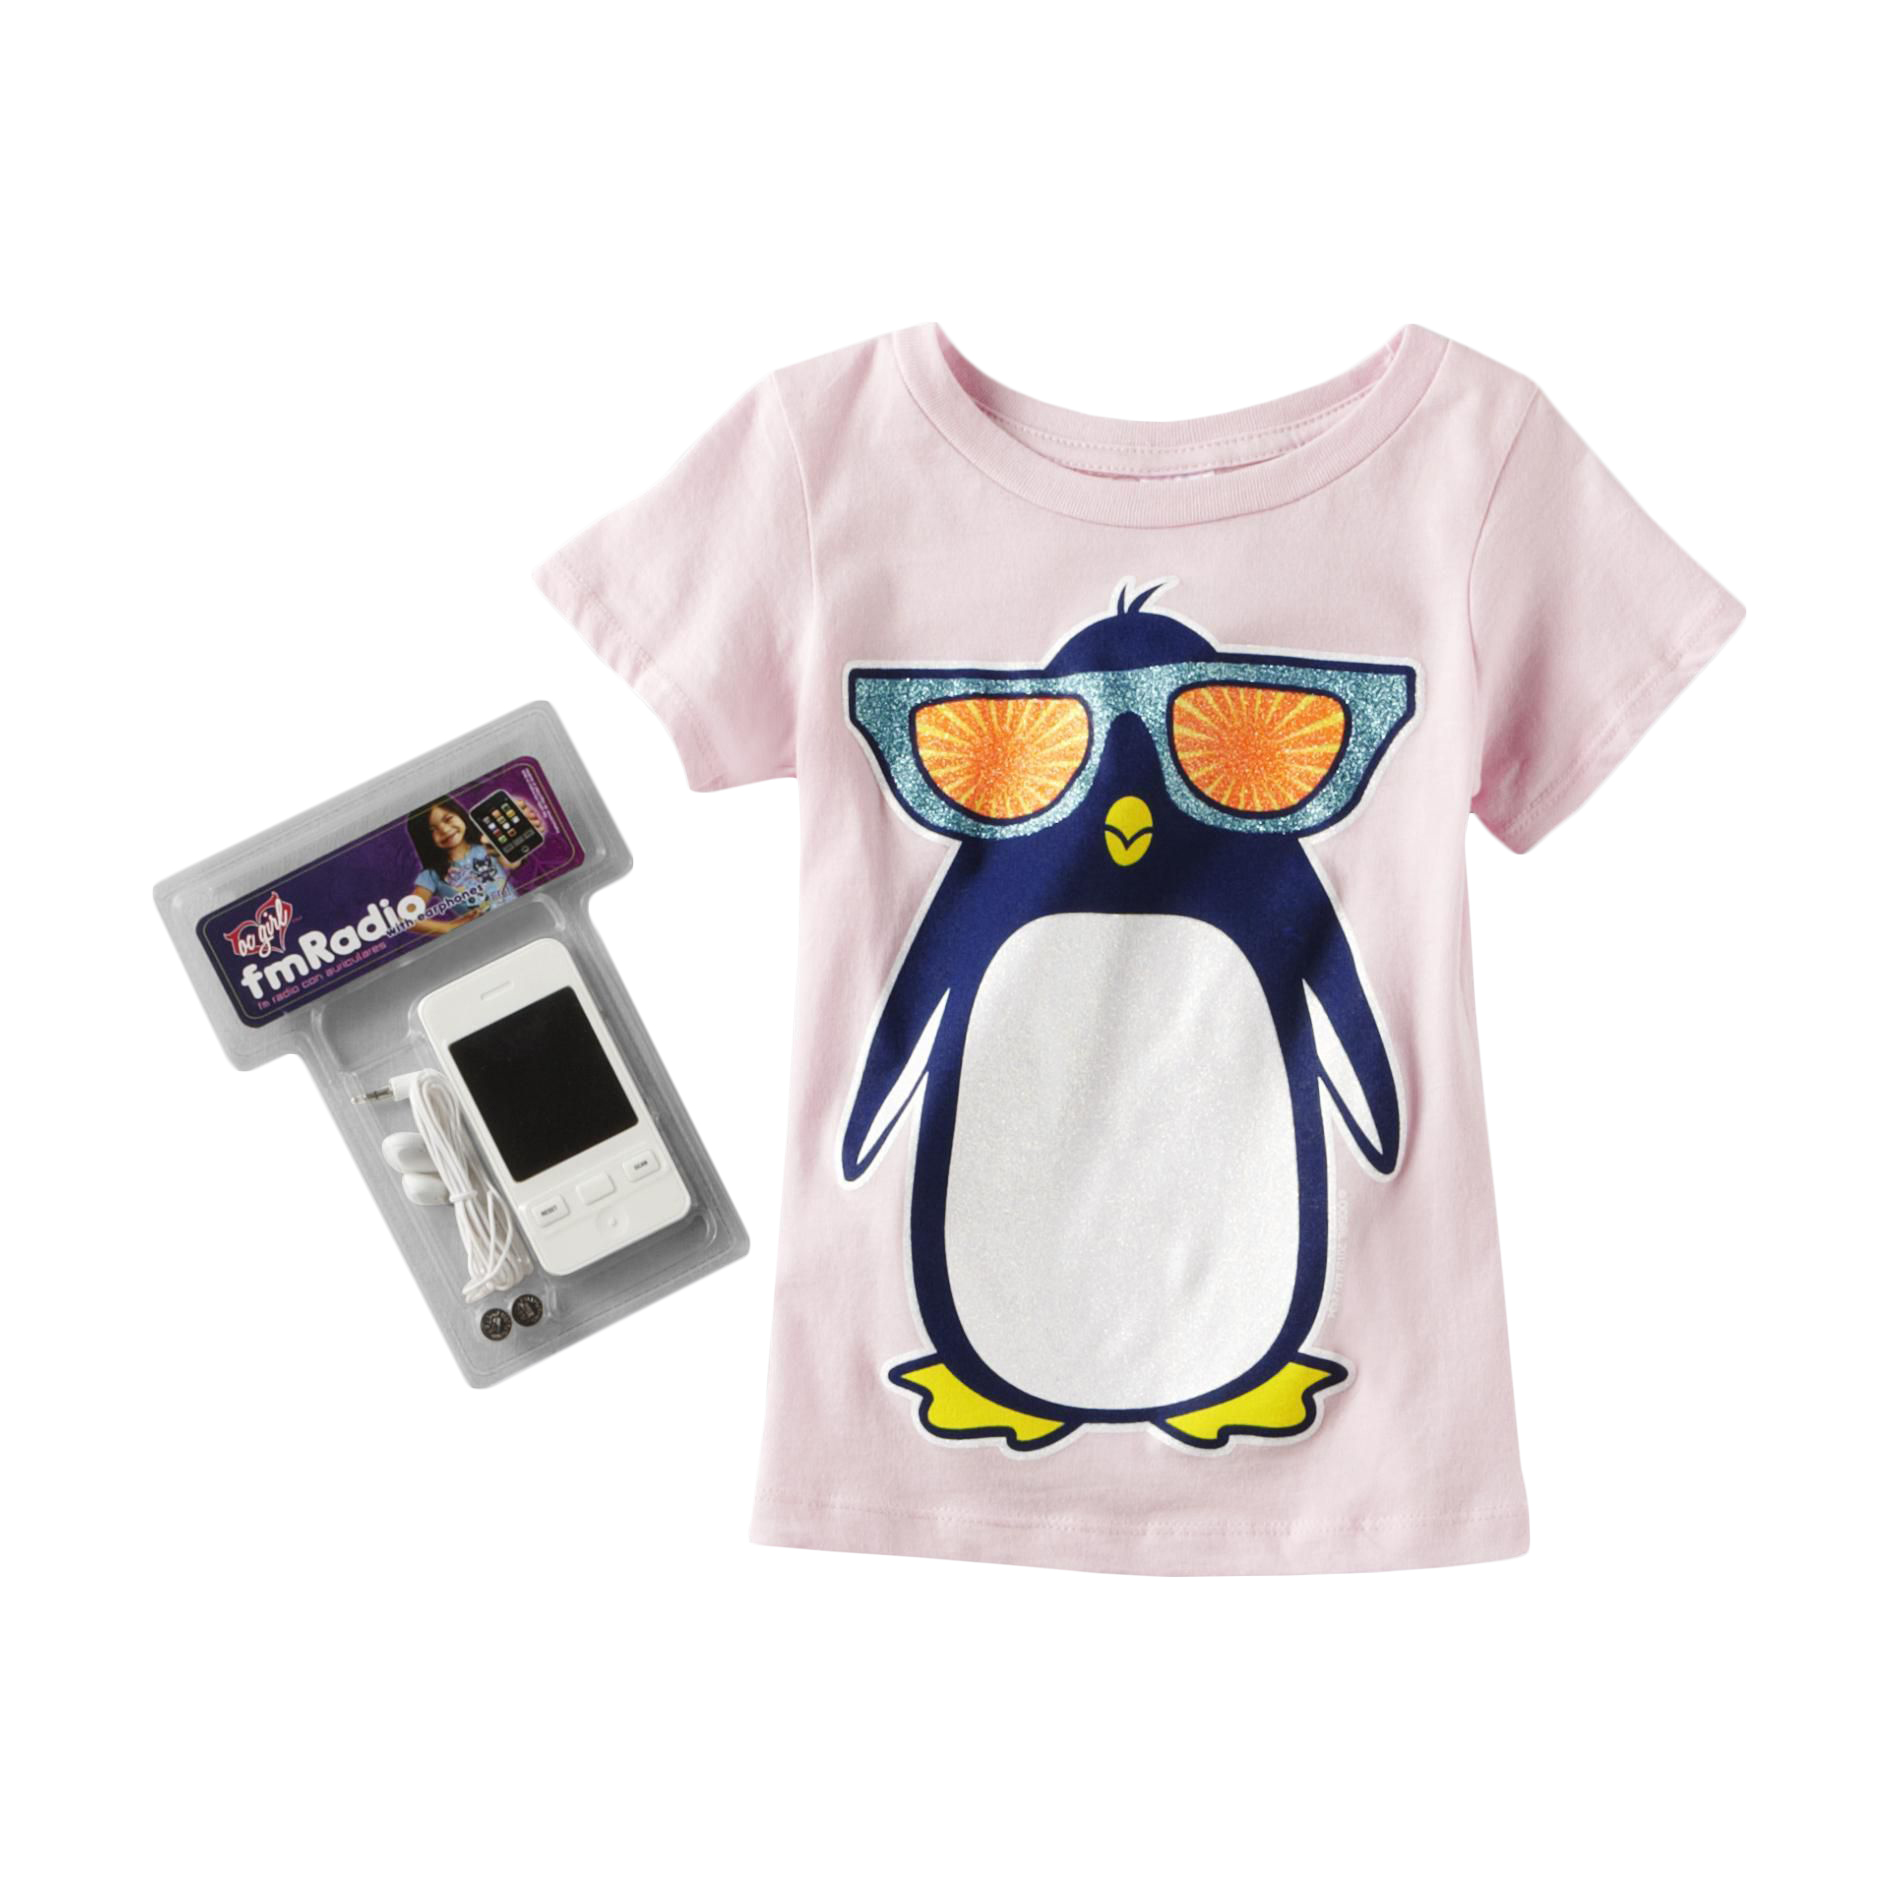 OC Girls Girl's Graphic T-Shirt & FM Radio - Penguin